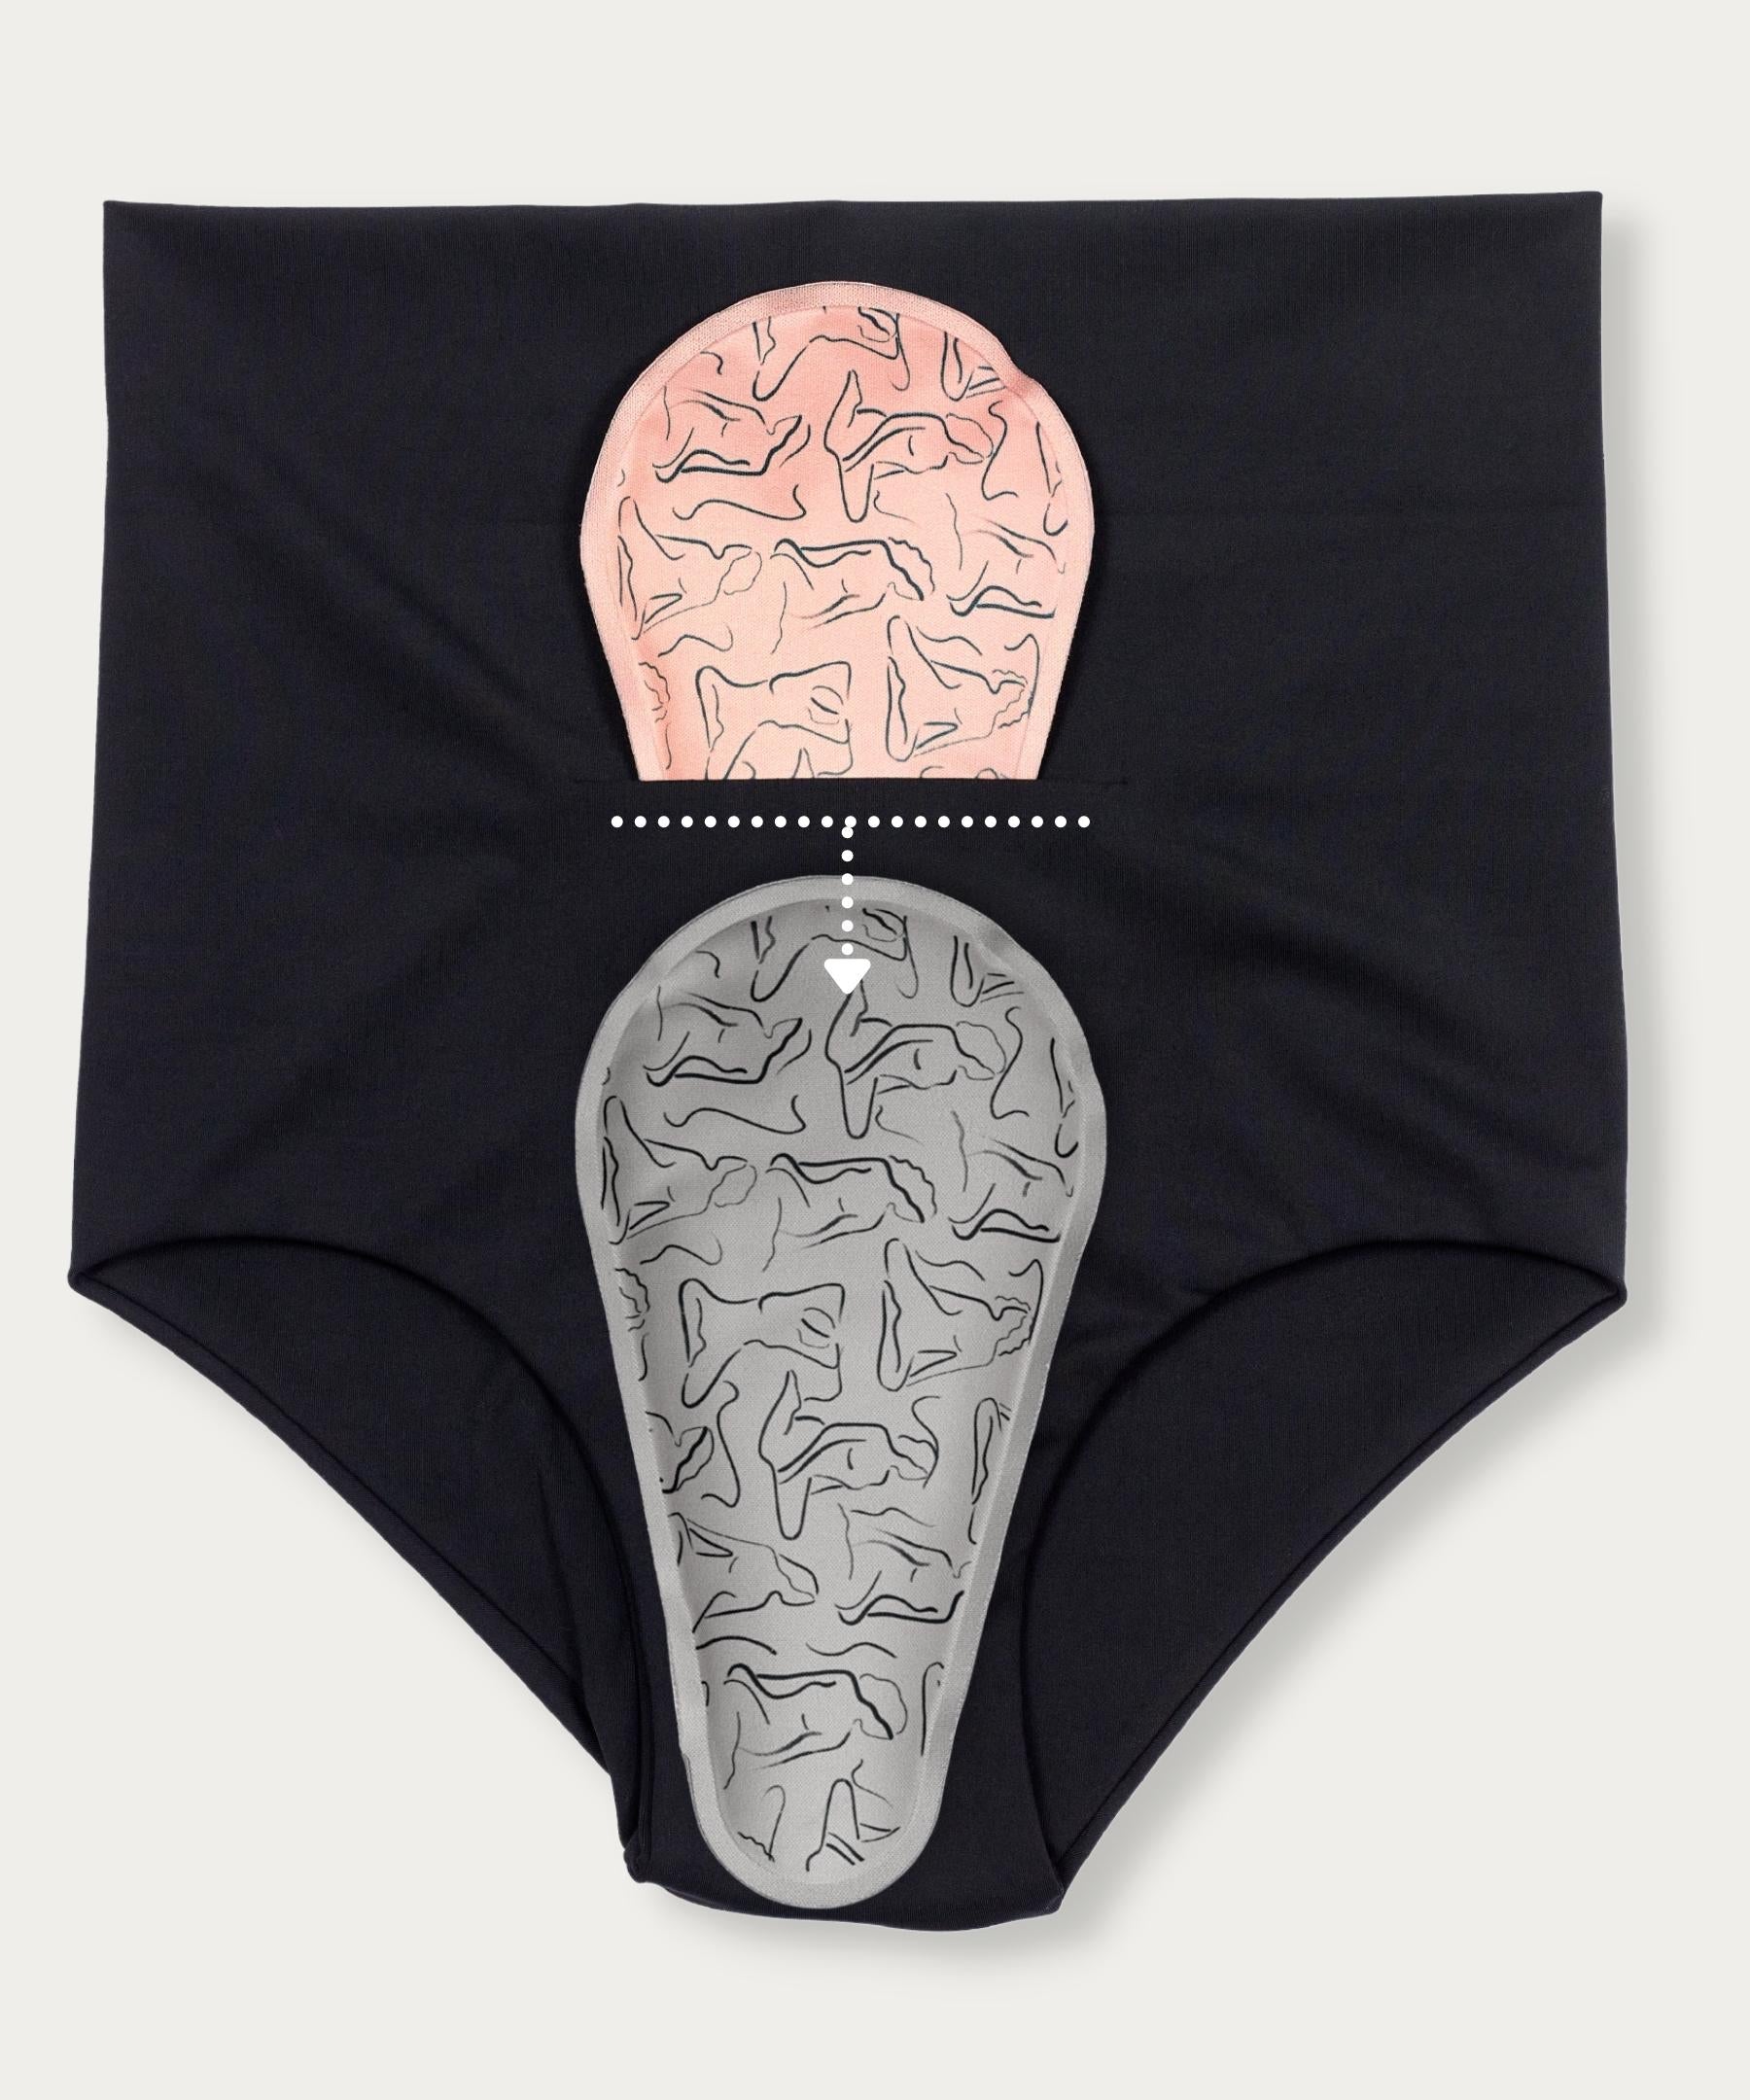 3-Ct FourthWear Postpartum Underwear + Ice/Heat Saver Set – Nyssa